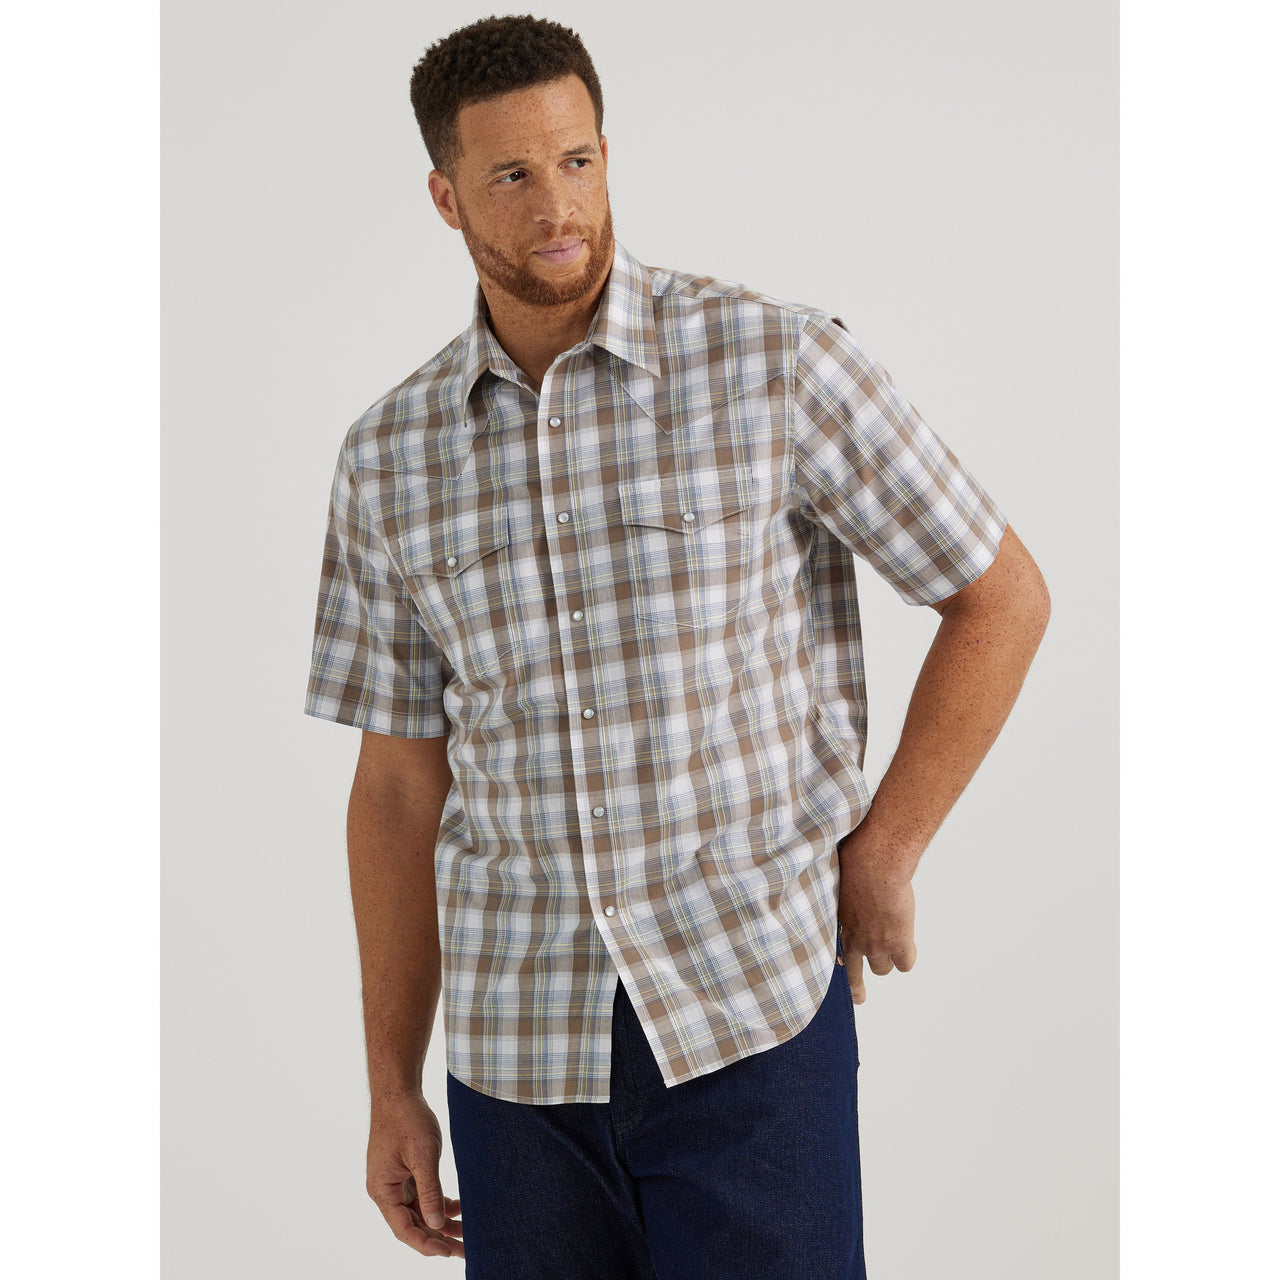 Wrangler Men's Wrinkle Resist Short Sleeve Plaid Shirt - Sand